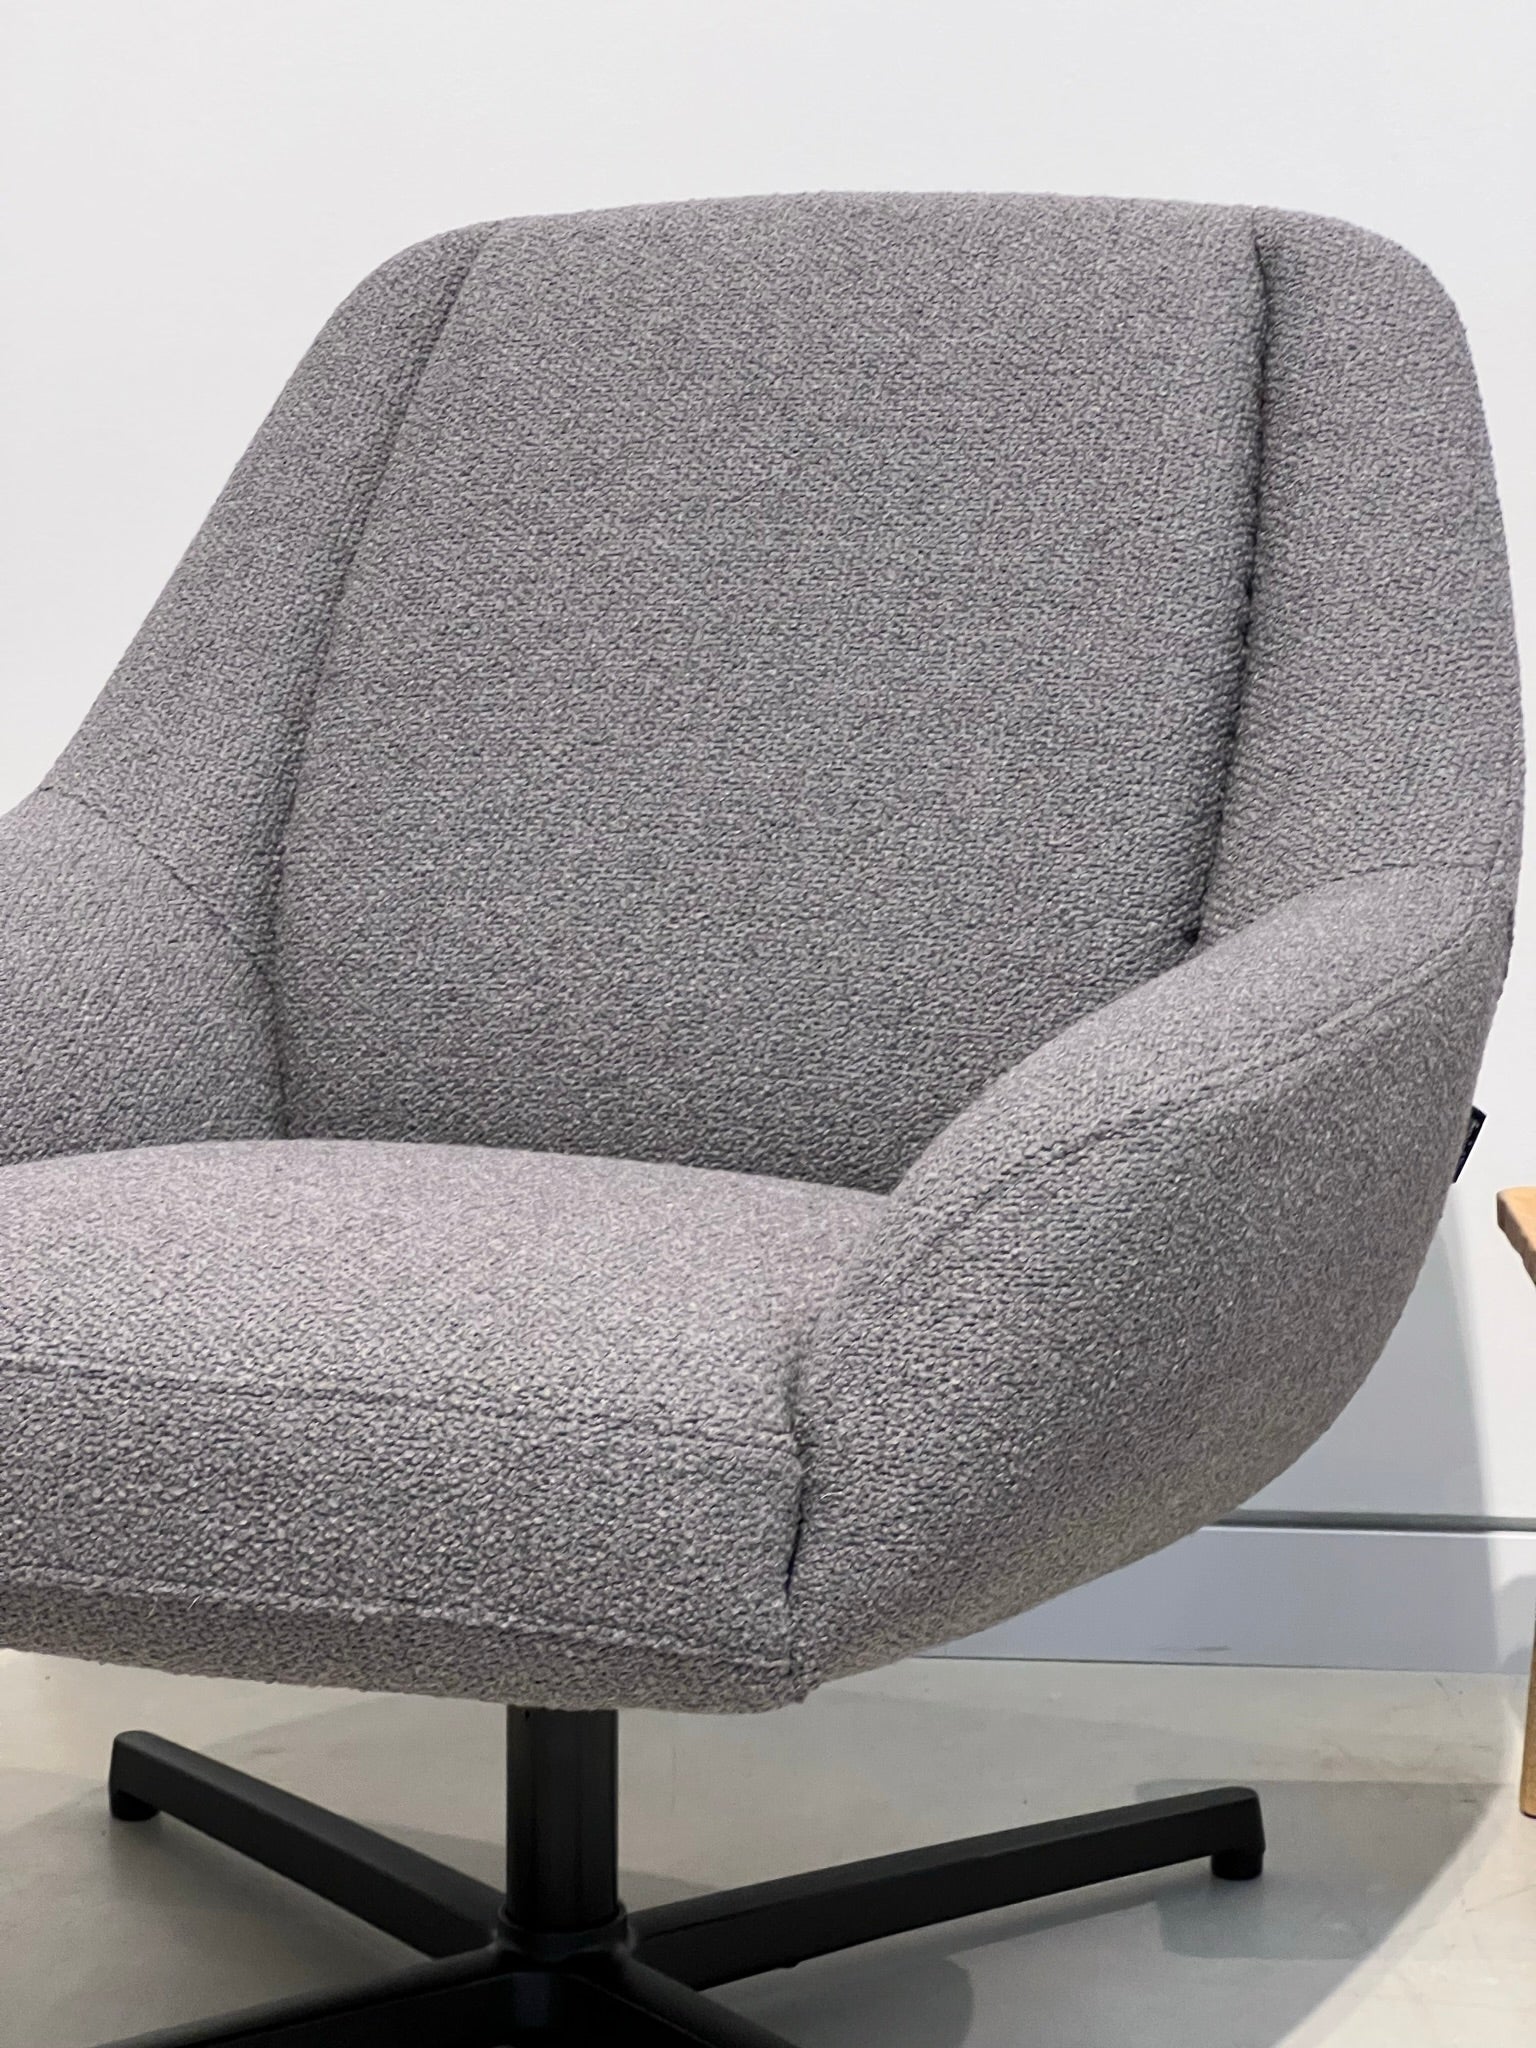 Freistil Rolf Benz 138 Armchair in Grey Fabric Detail